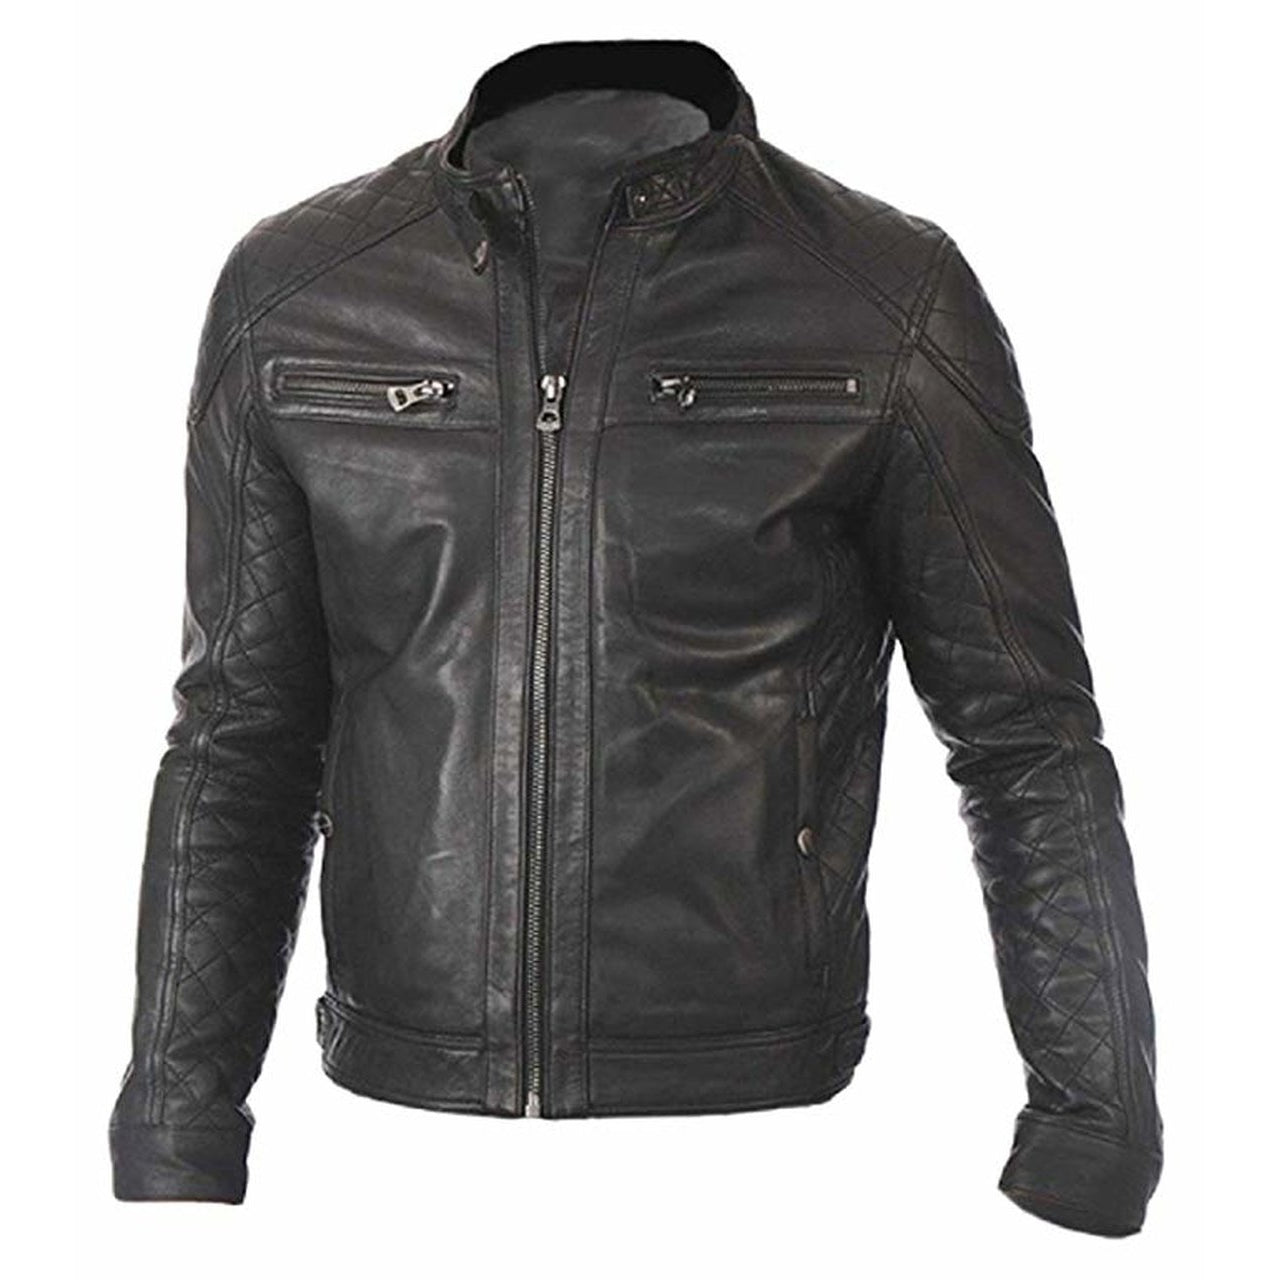 Stylish Fit Black Leather Jacket for Men - Men Jacket - Leather Jacket